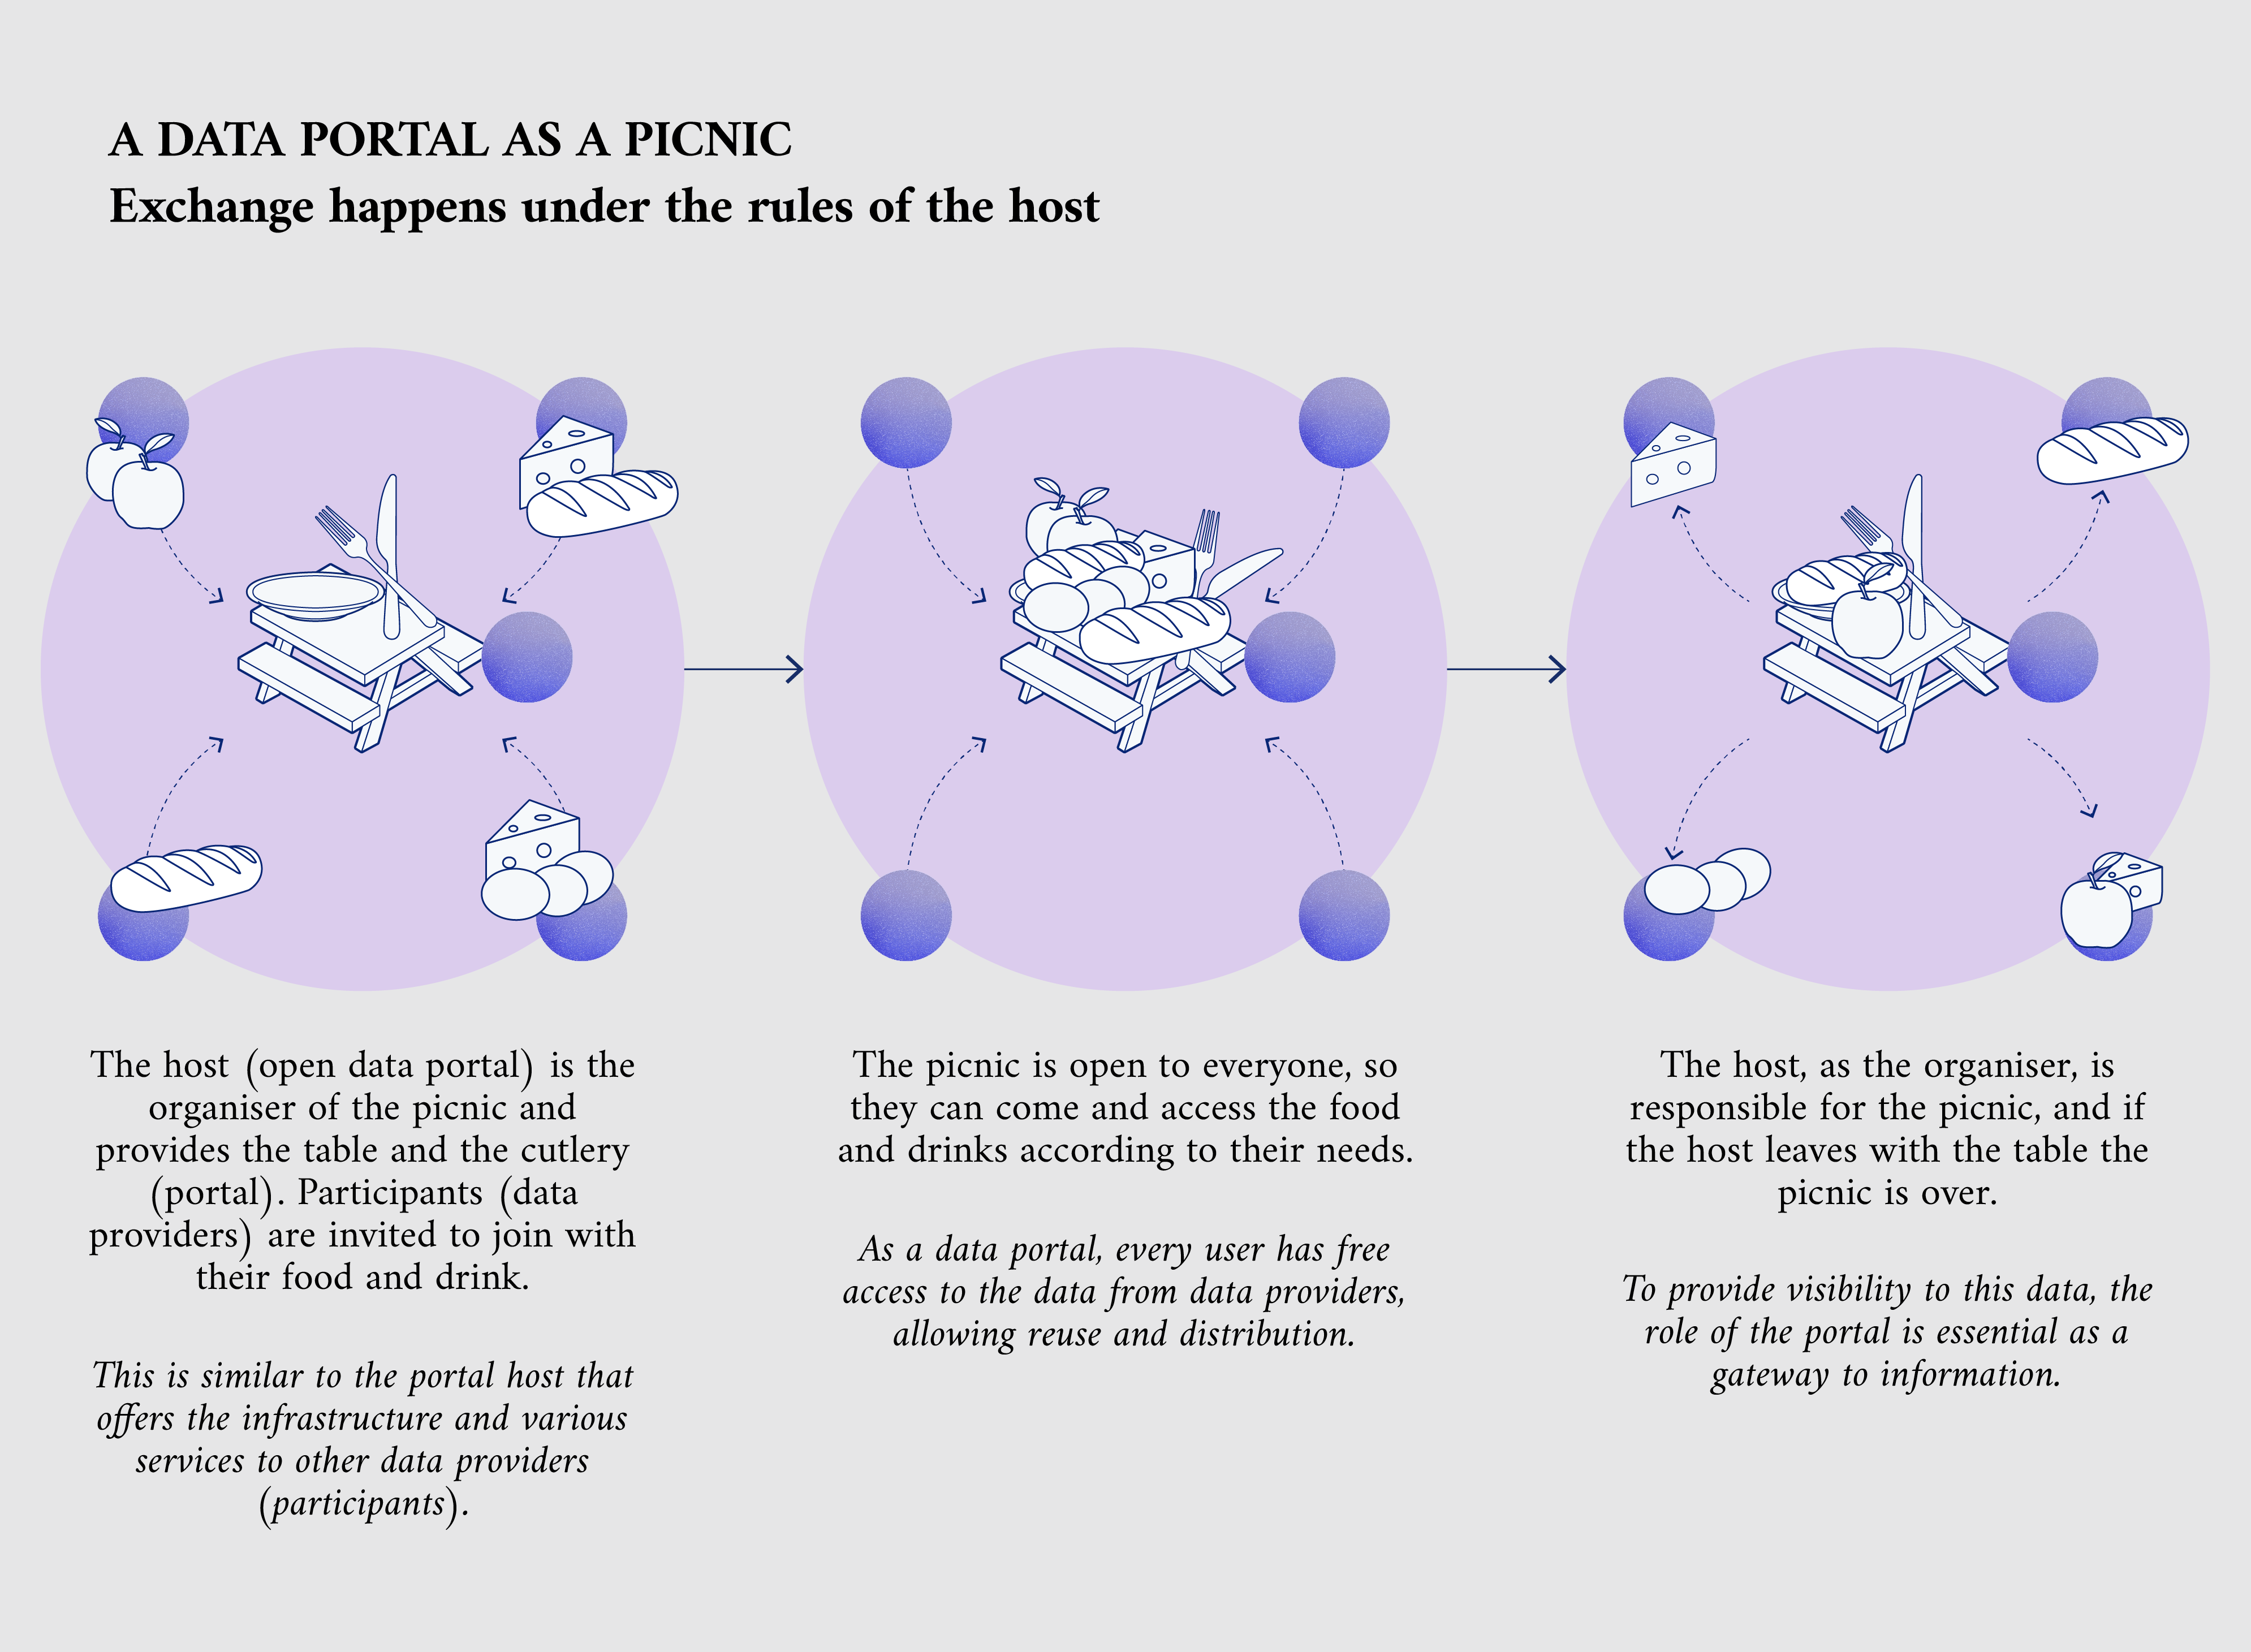 Una analogía con los portales de datos como picnic